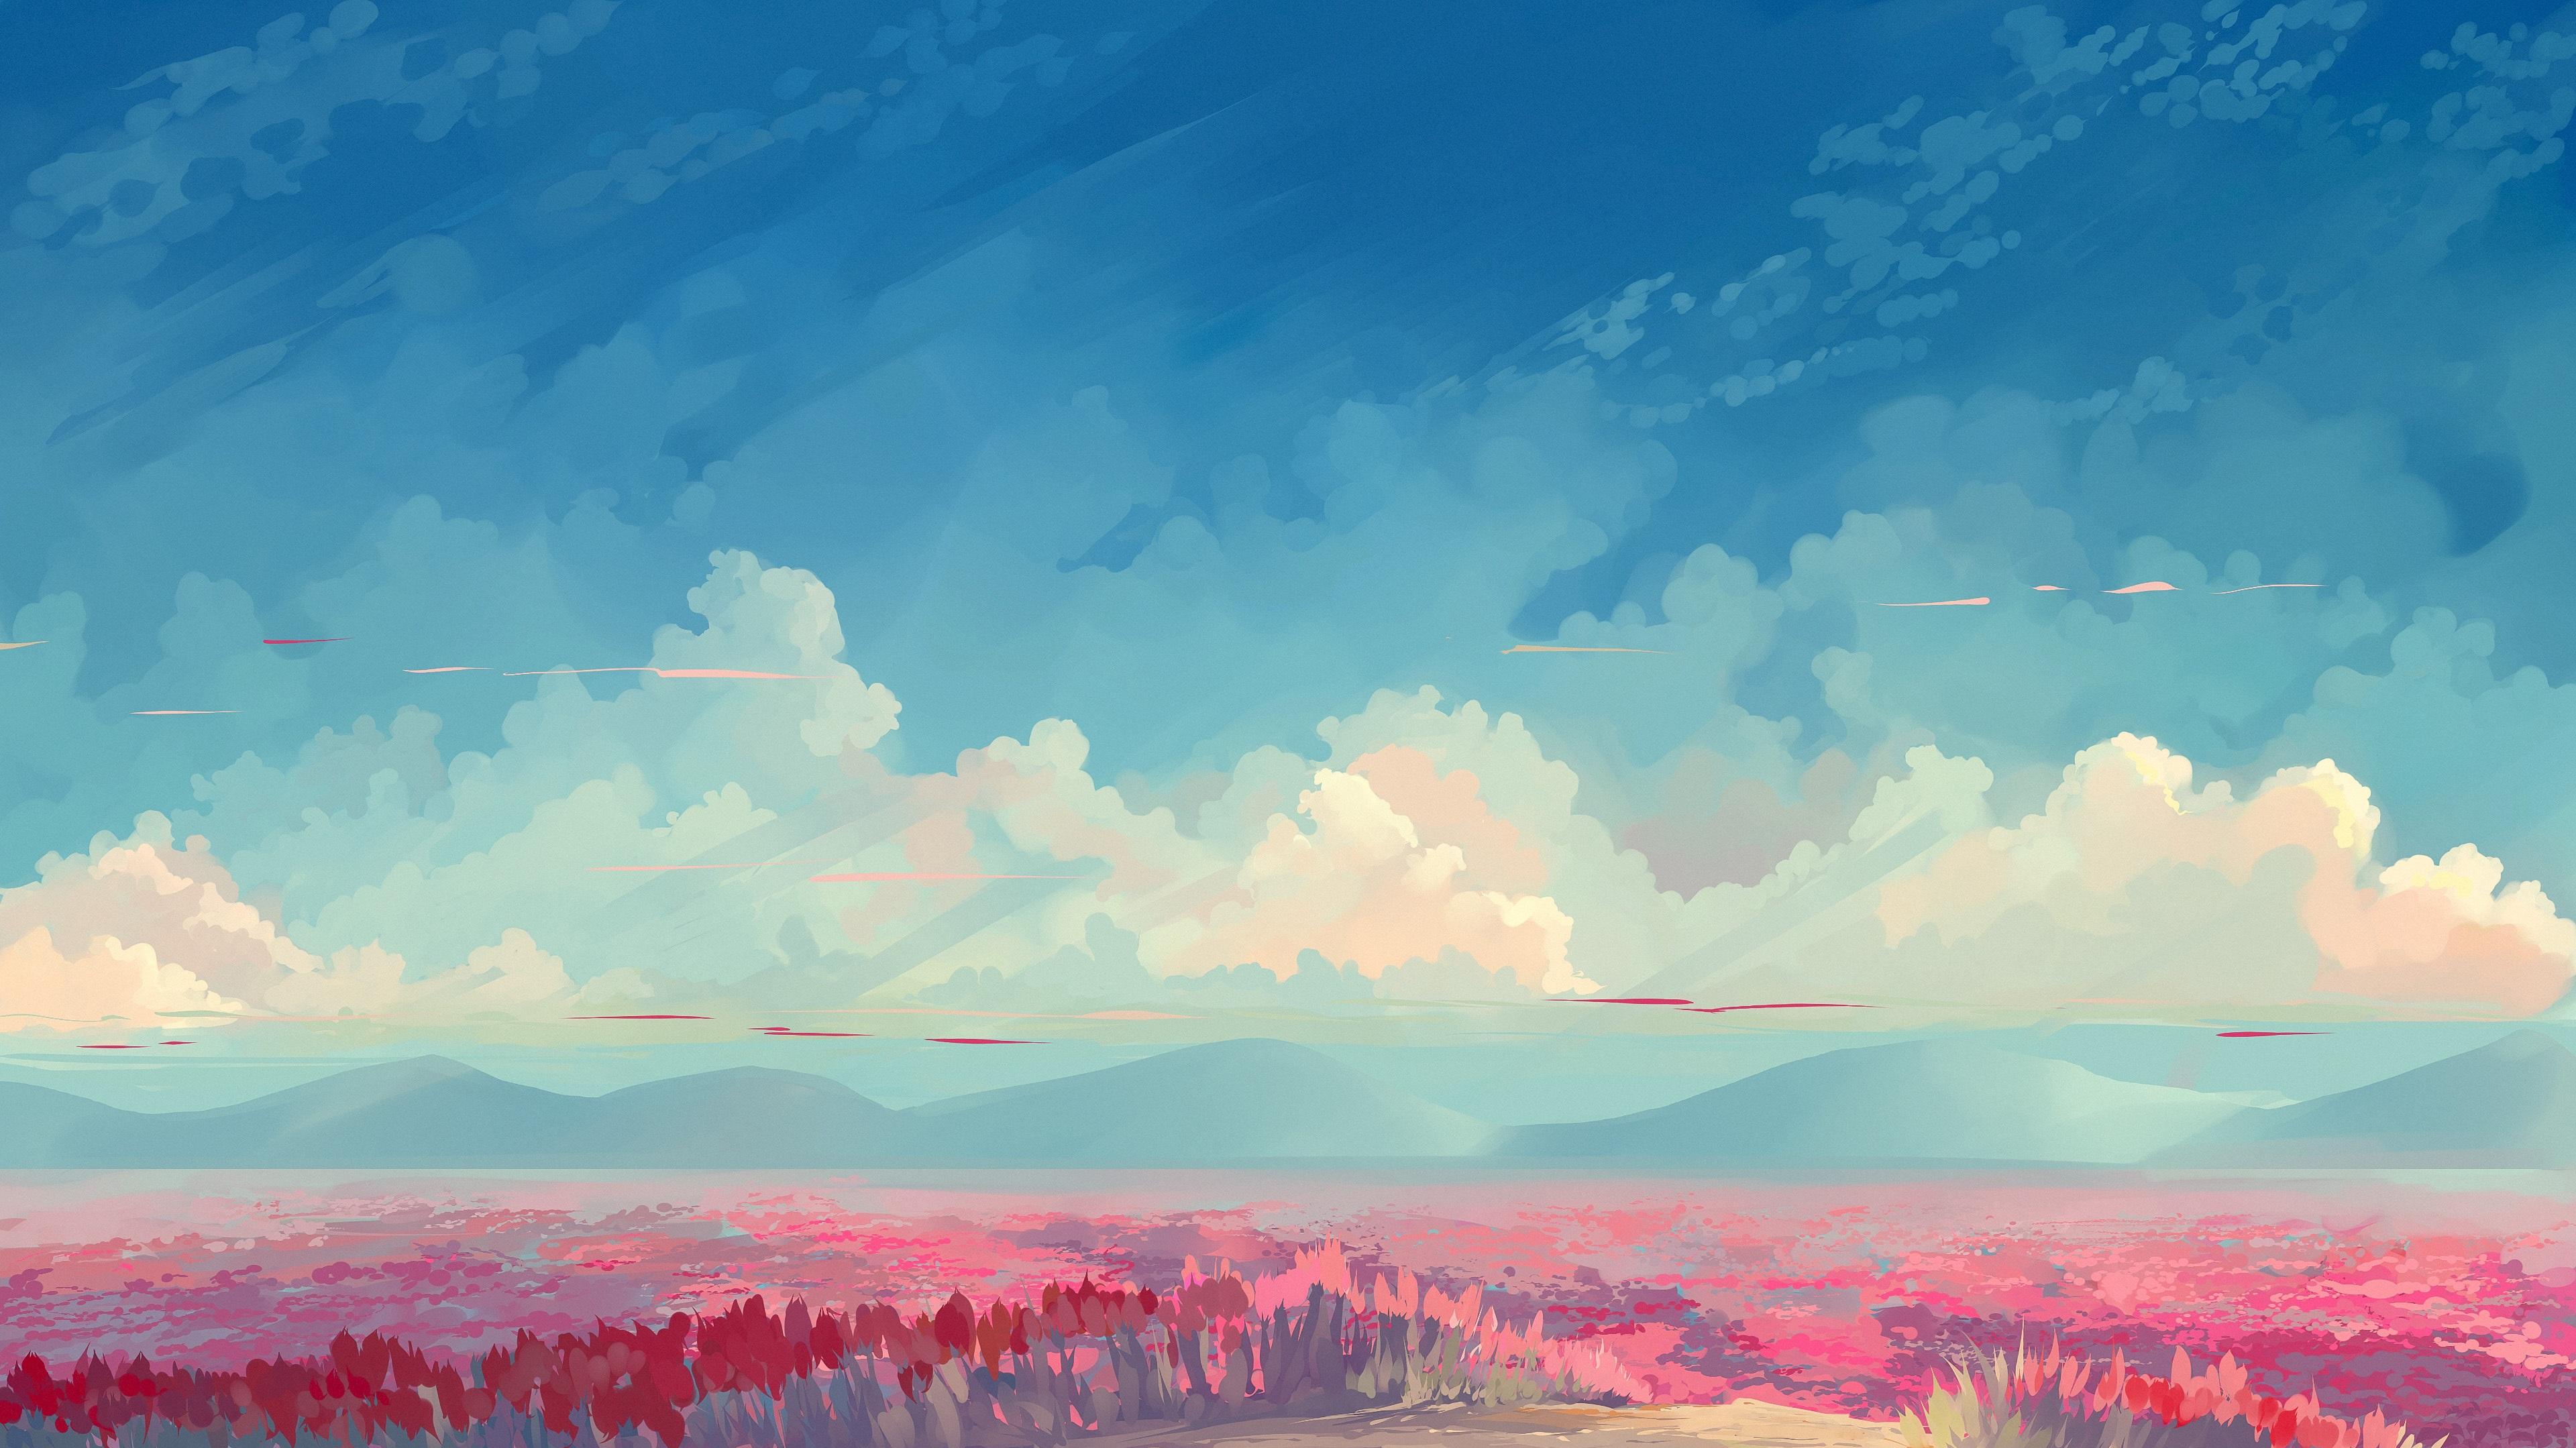 4k Ultra HD Anime Landscape Wallpaper Cloud Kissed Field